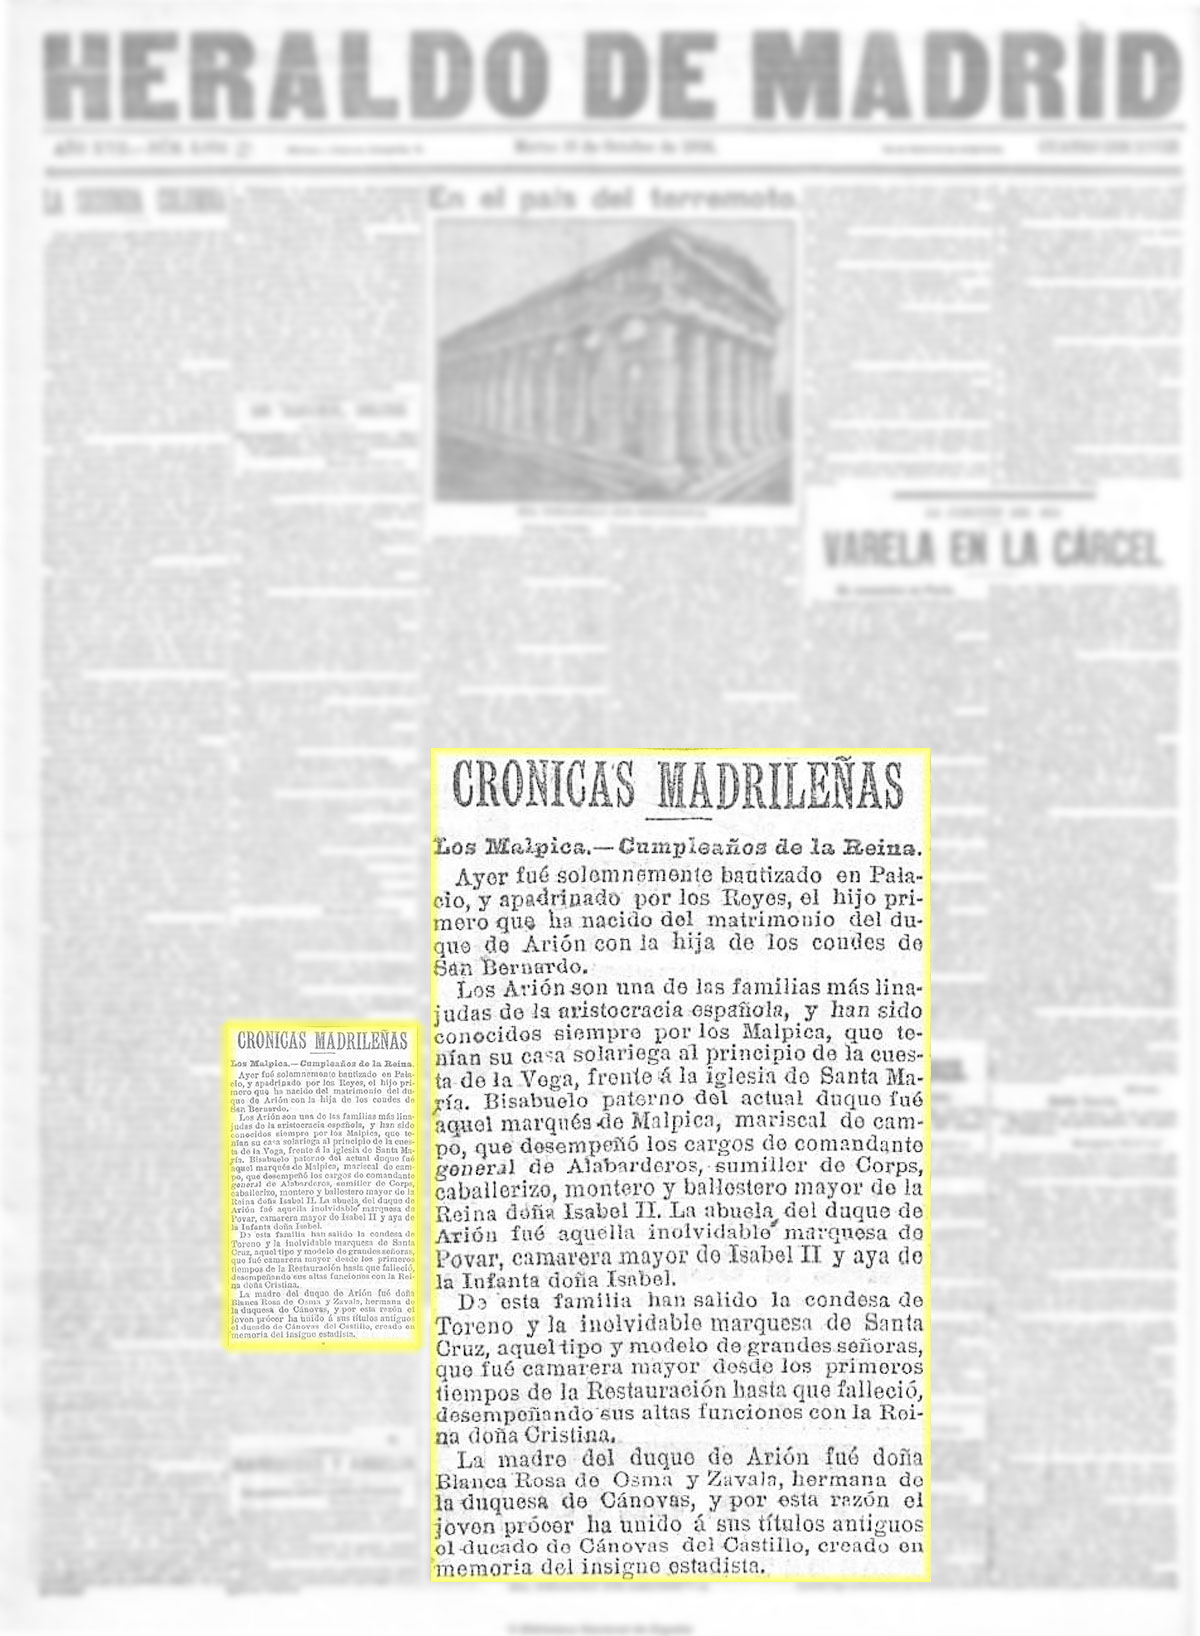 El Heraldo de Madrid 16-10-1906. Bautizo de D. Fernando Fernández de Córdoba y Mariátegui Marqués de Povar